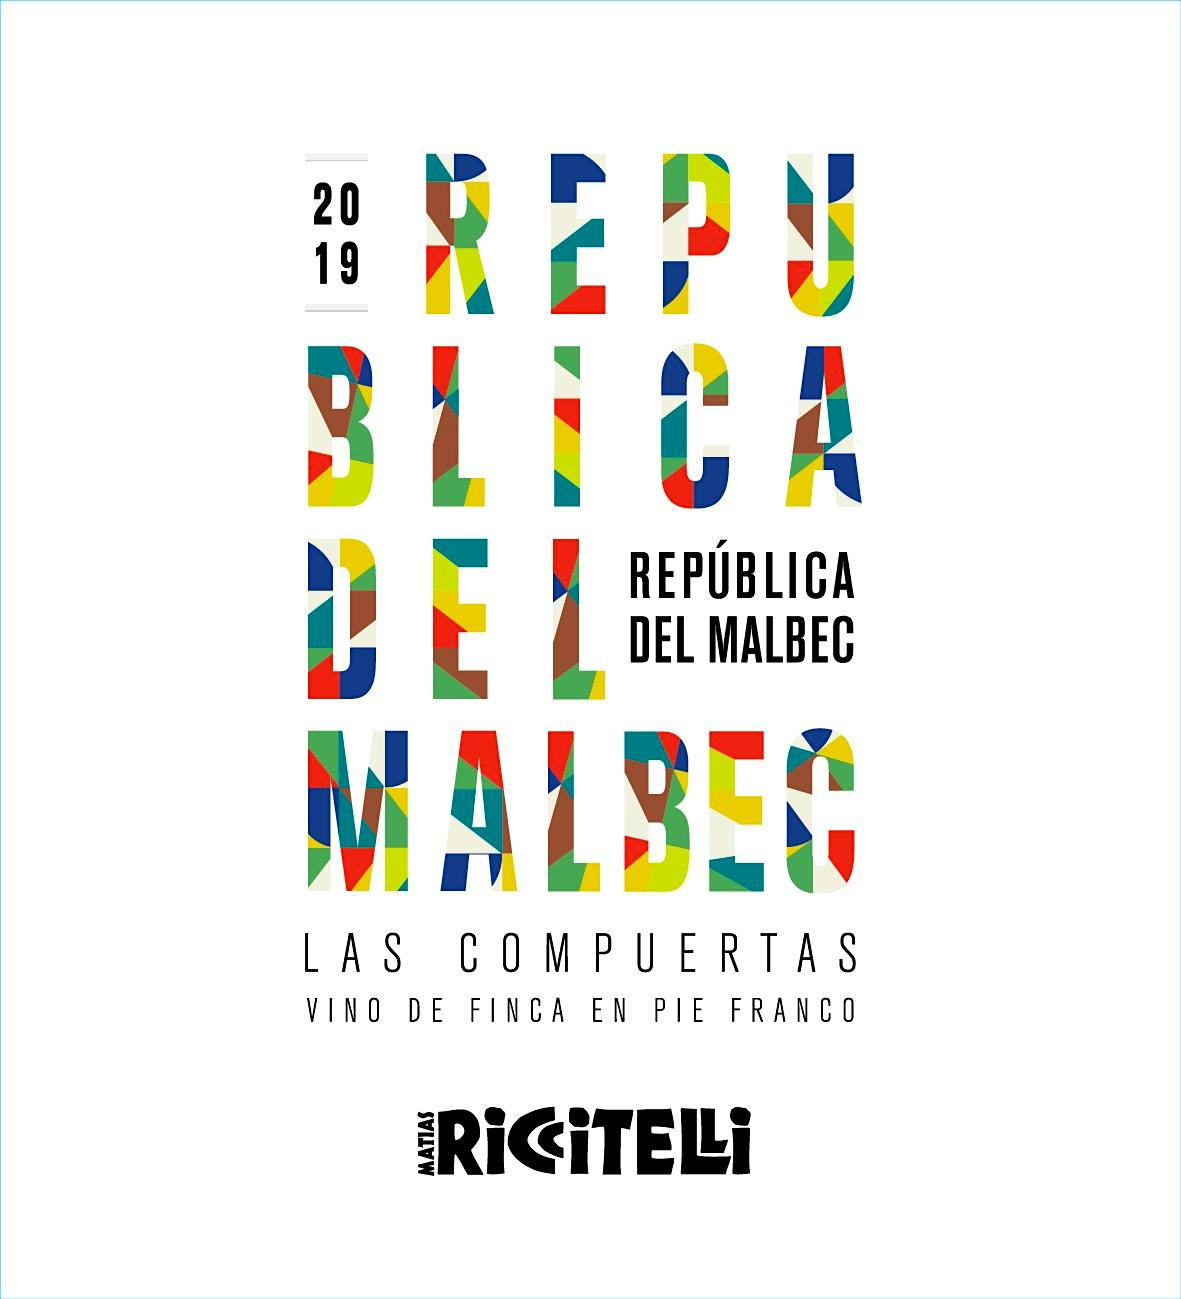 Label for Matias Riccitelli